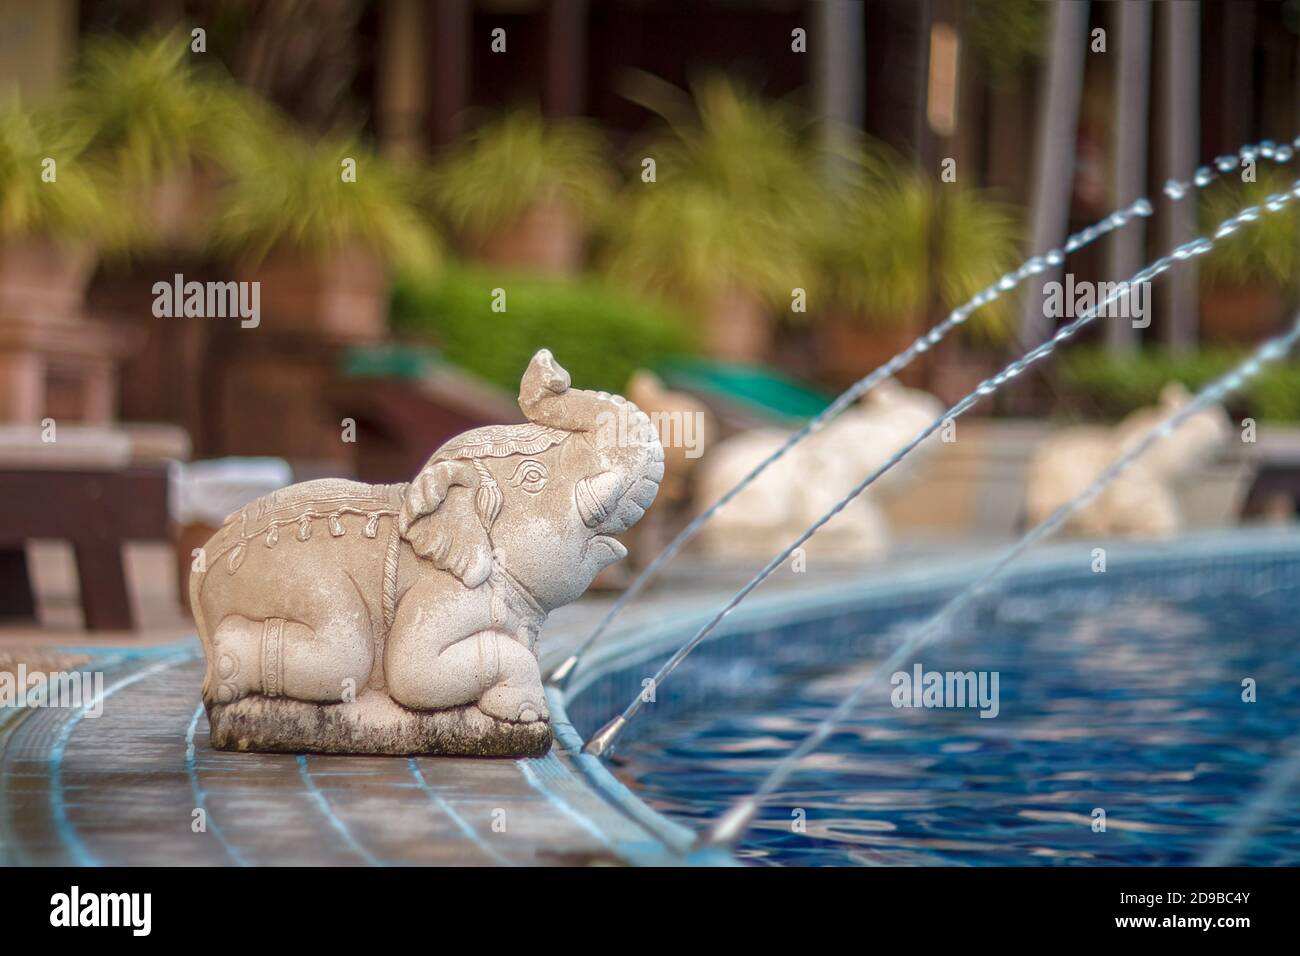 Piscina de lujo al aire libre y agua de elefante. Las estatuas de elefantes rocían agua de una piscina. Hormigón elefante. Estatua de elefante junto a la piscina. Foto de stock